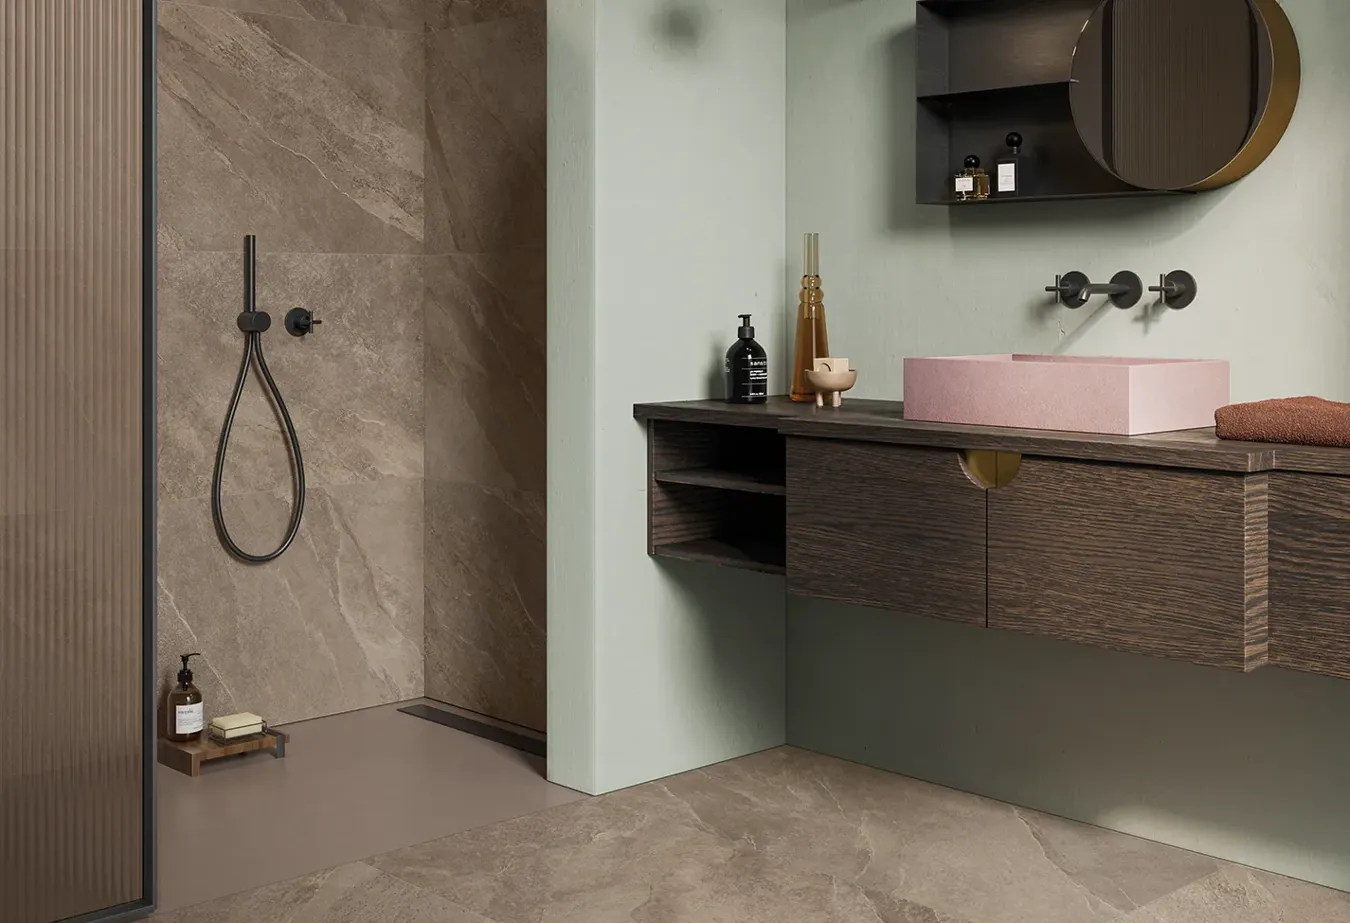 Baño elegante con pared y suelo de gres porcelánico efecto pizarra Ubik Walnut, mueble de madera oscura y lavabo rosa.